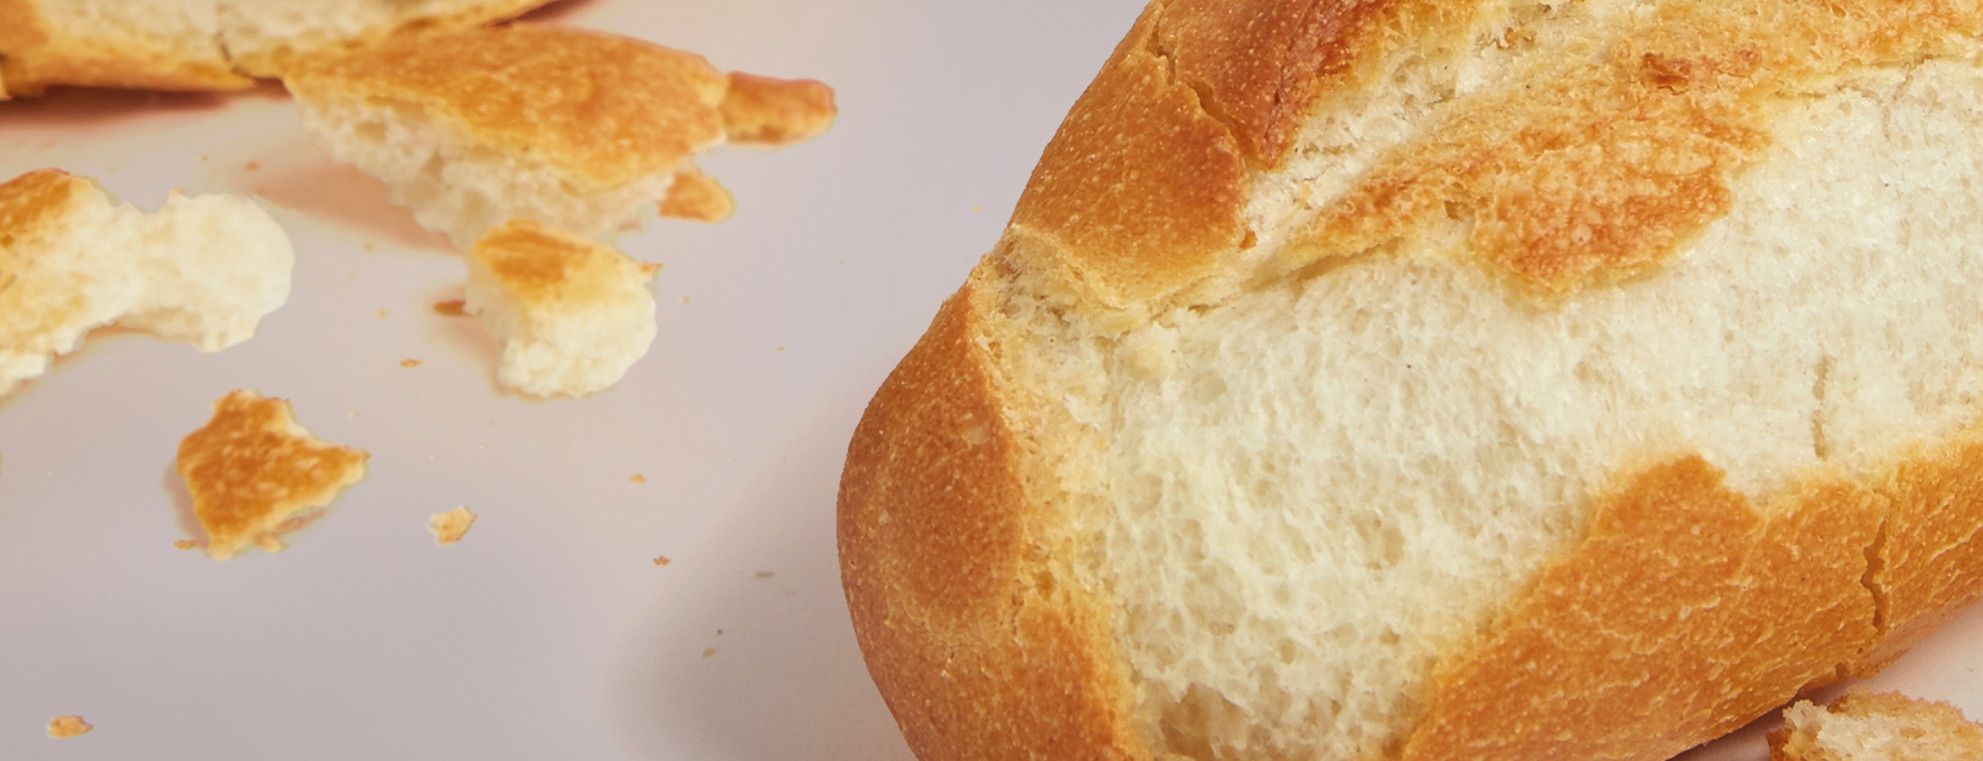 anti-descascado - foto do pão